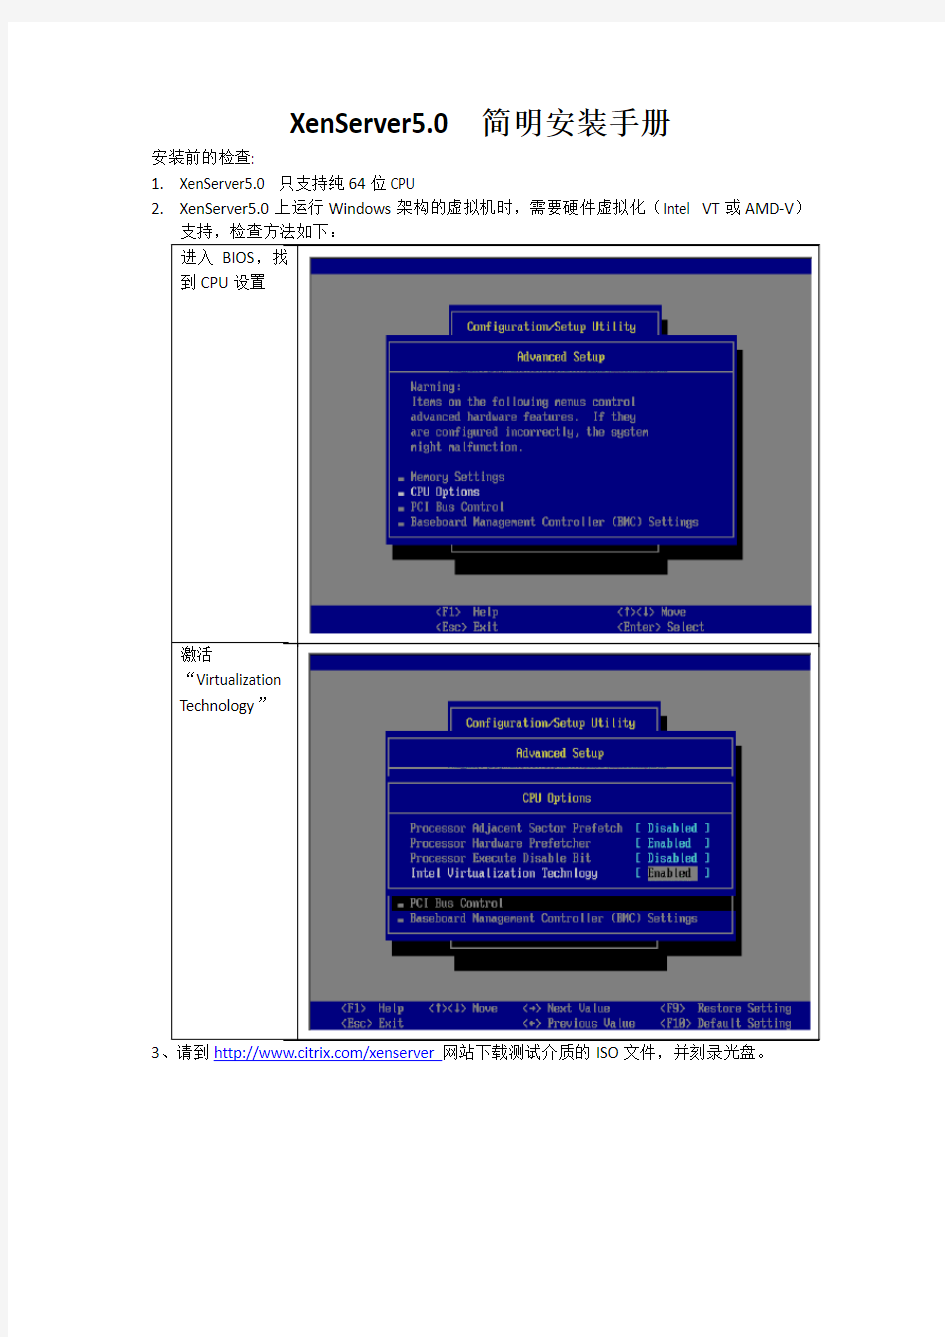 XenServer6.0中文安装手册,全图解安装过程